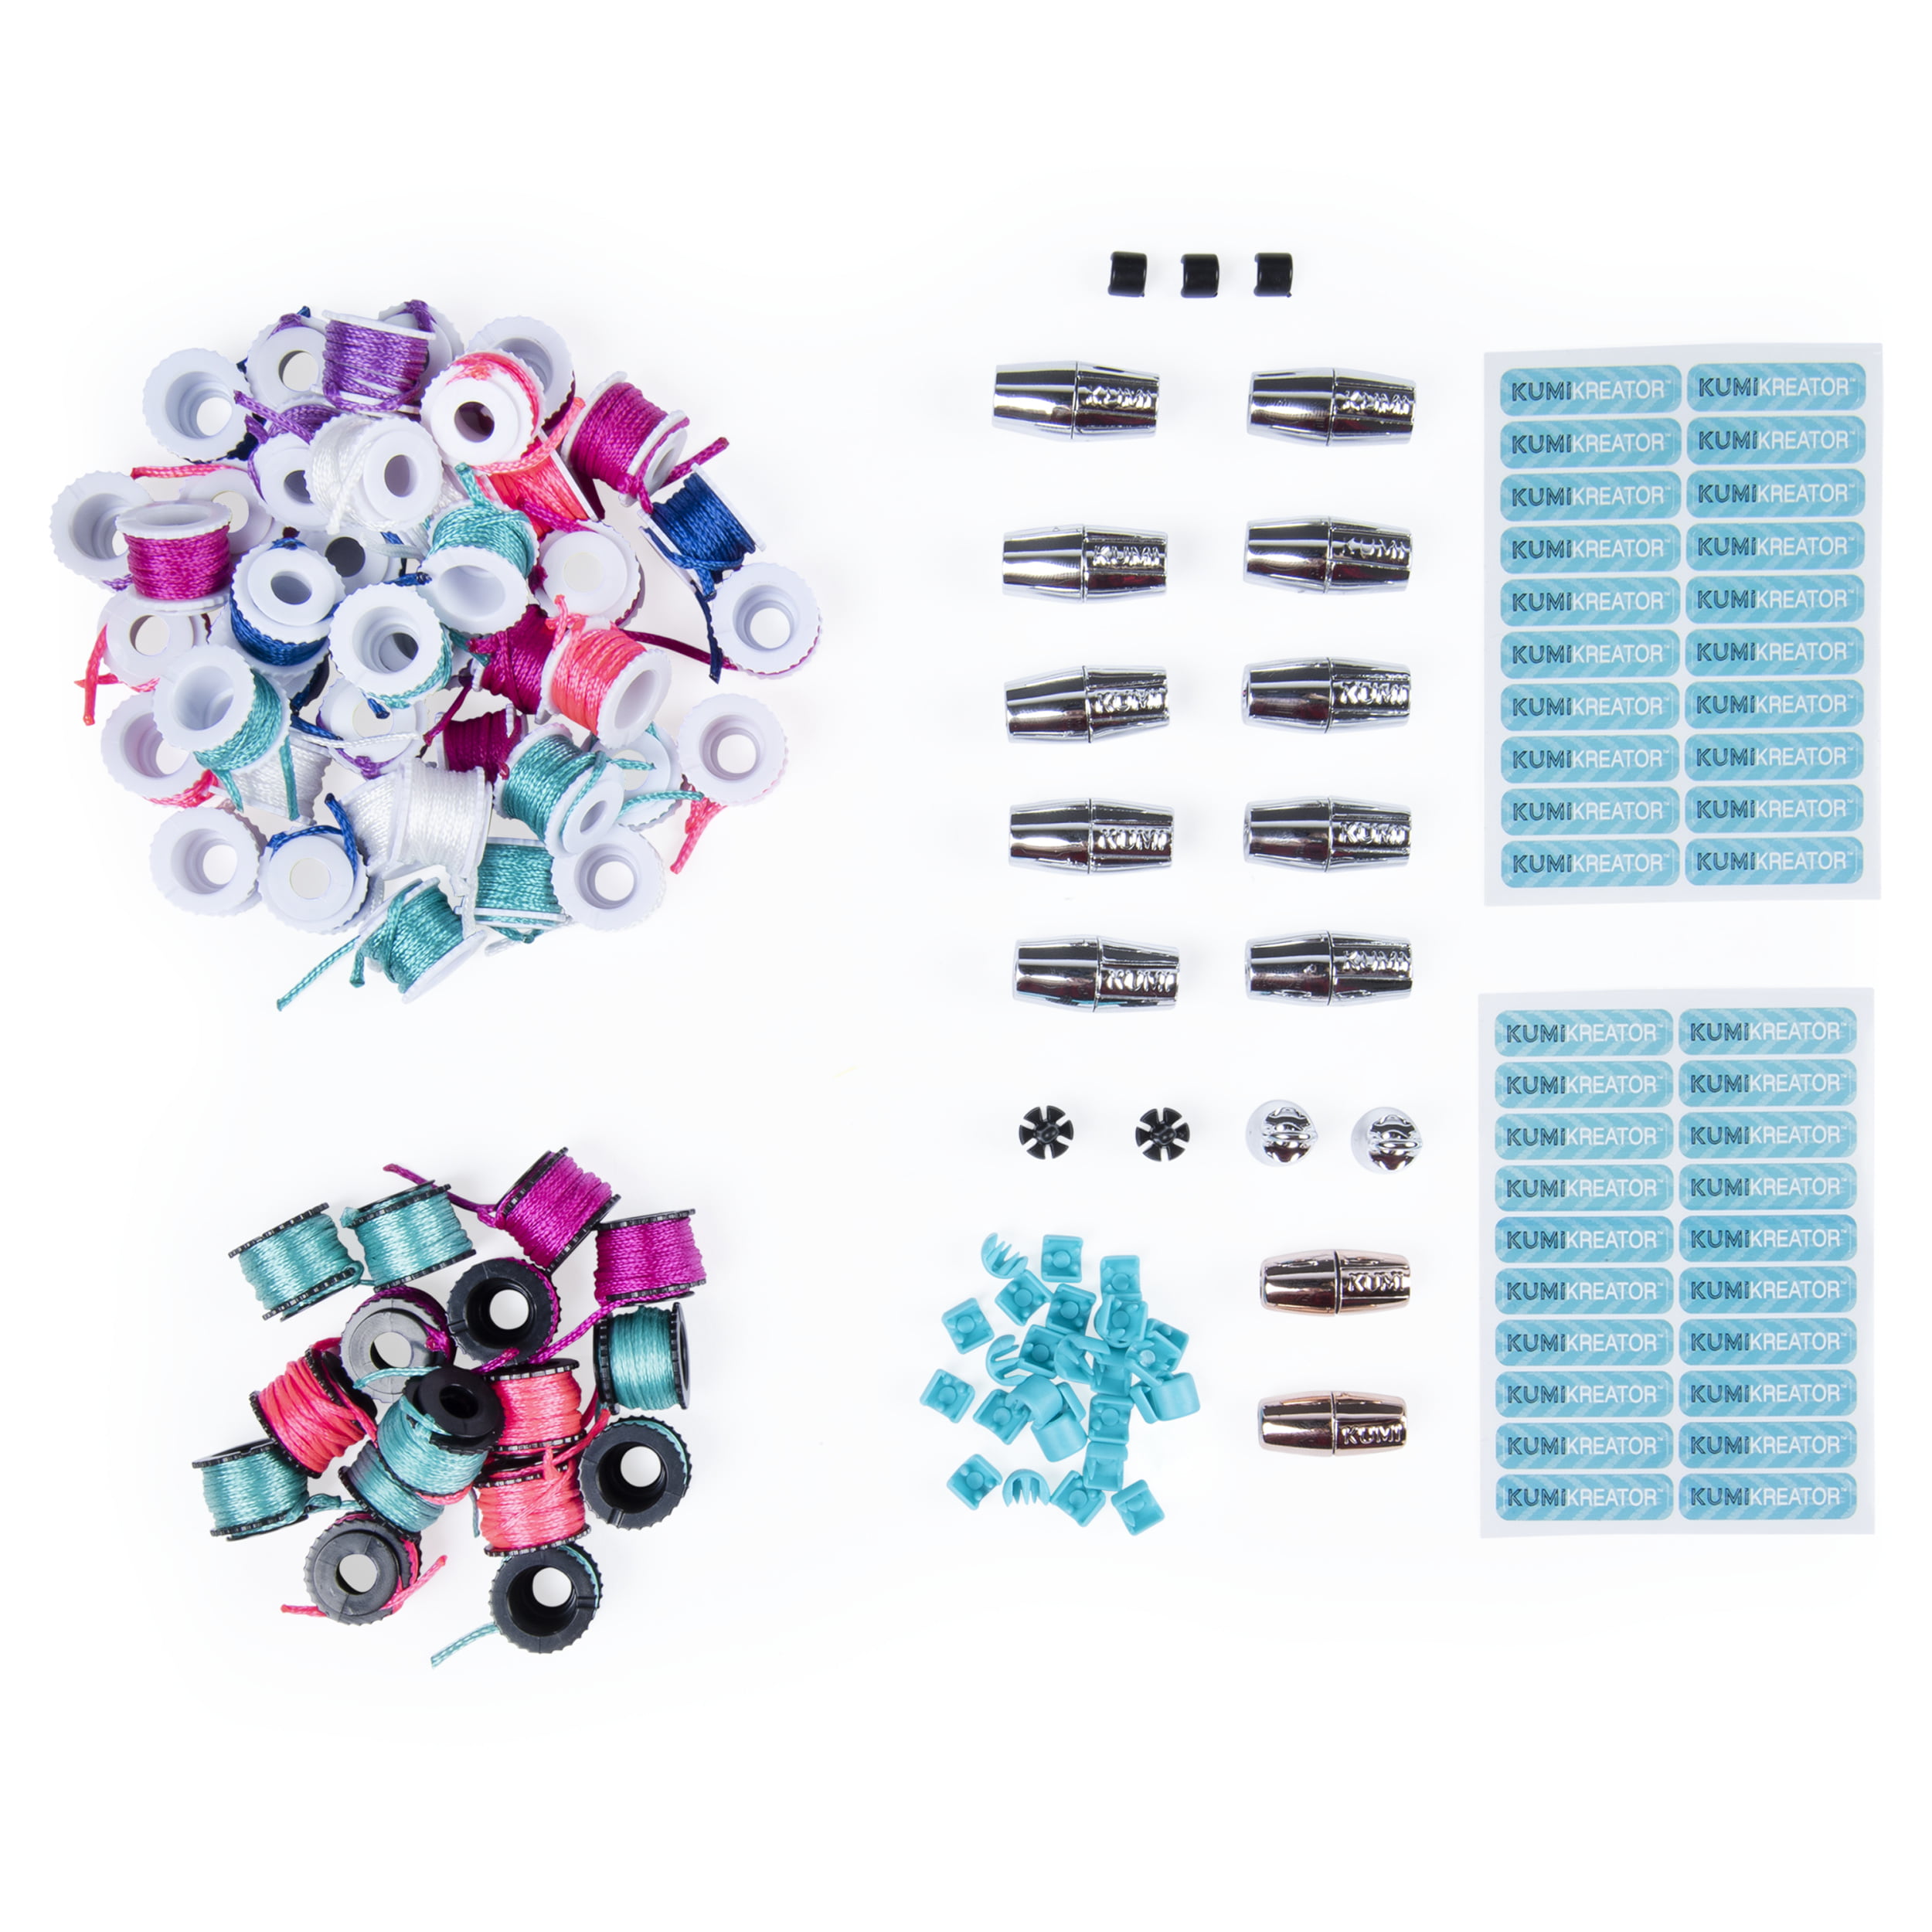 Cool Maker Kumi Kreator Mini Fashion Pack Sunburst Refill Set